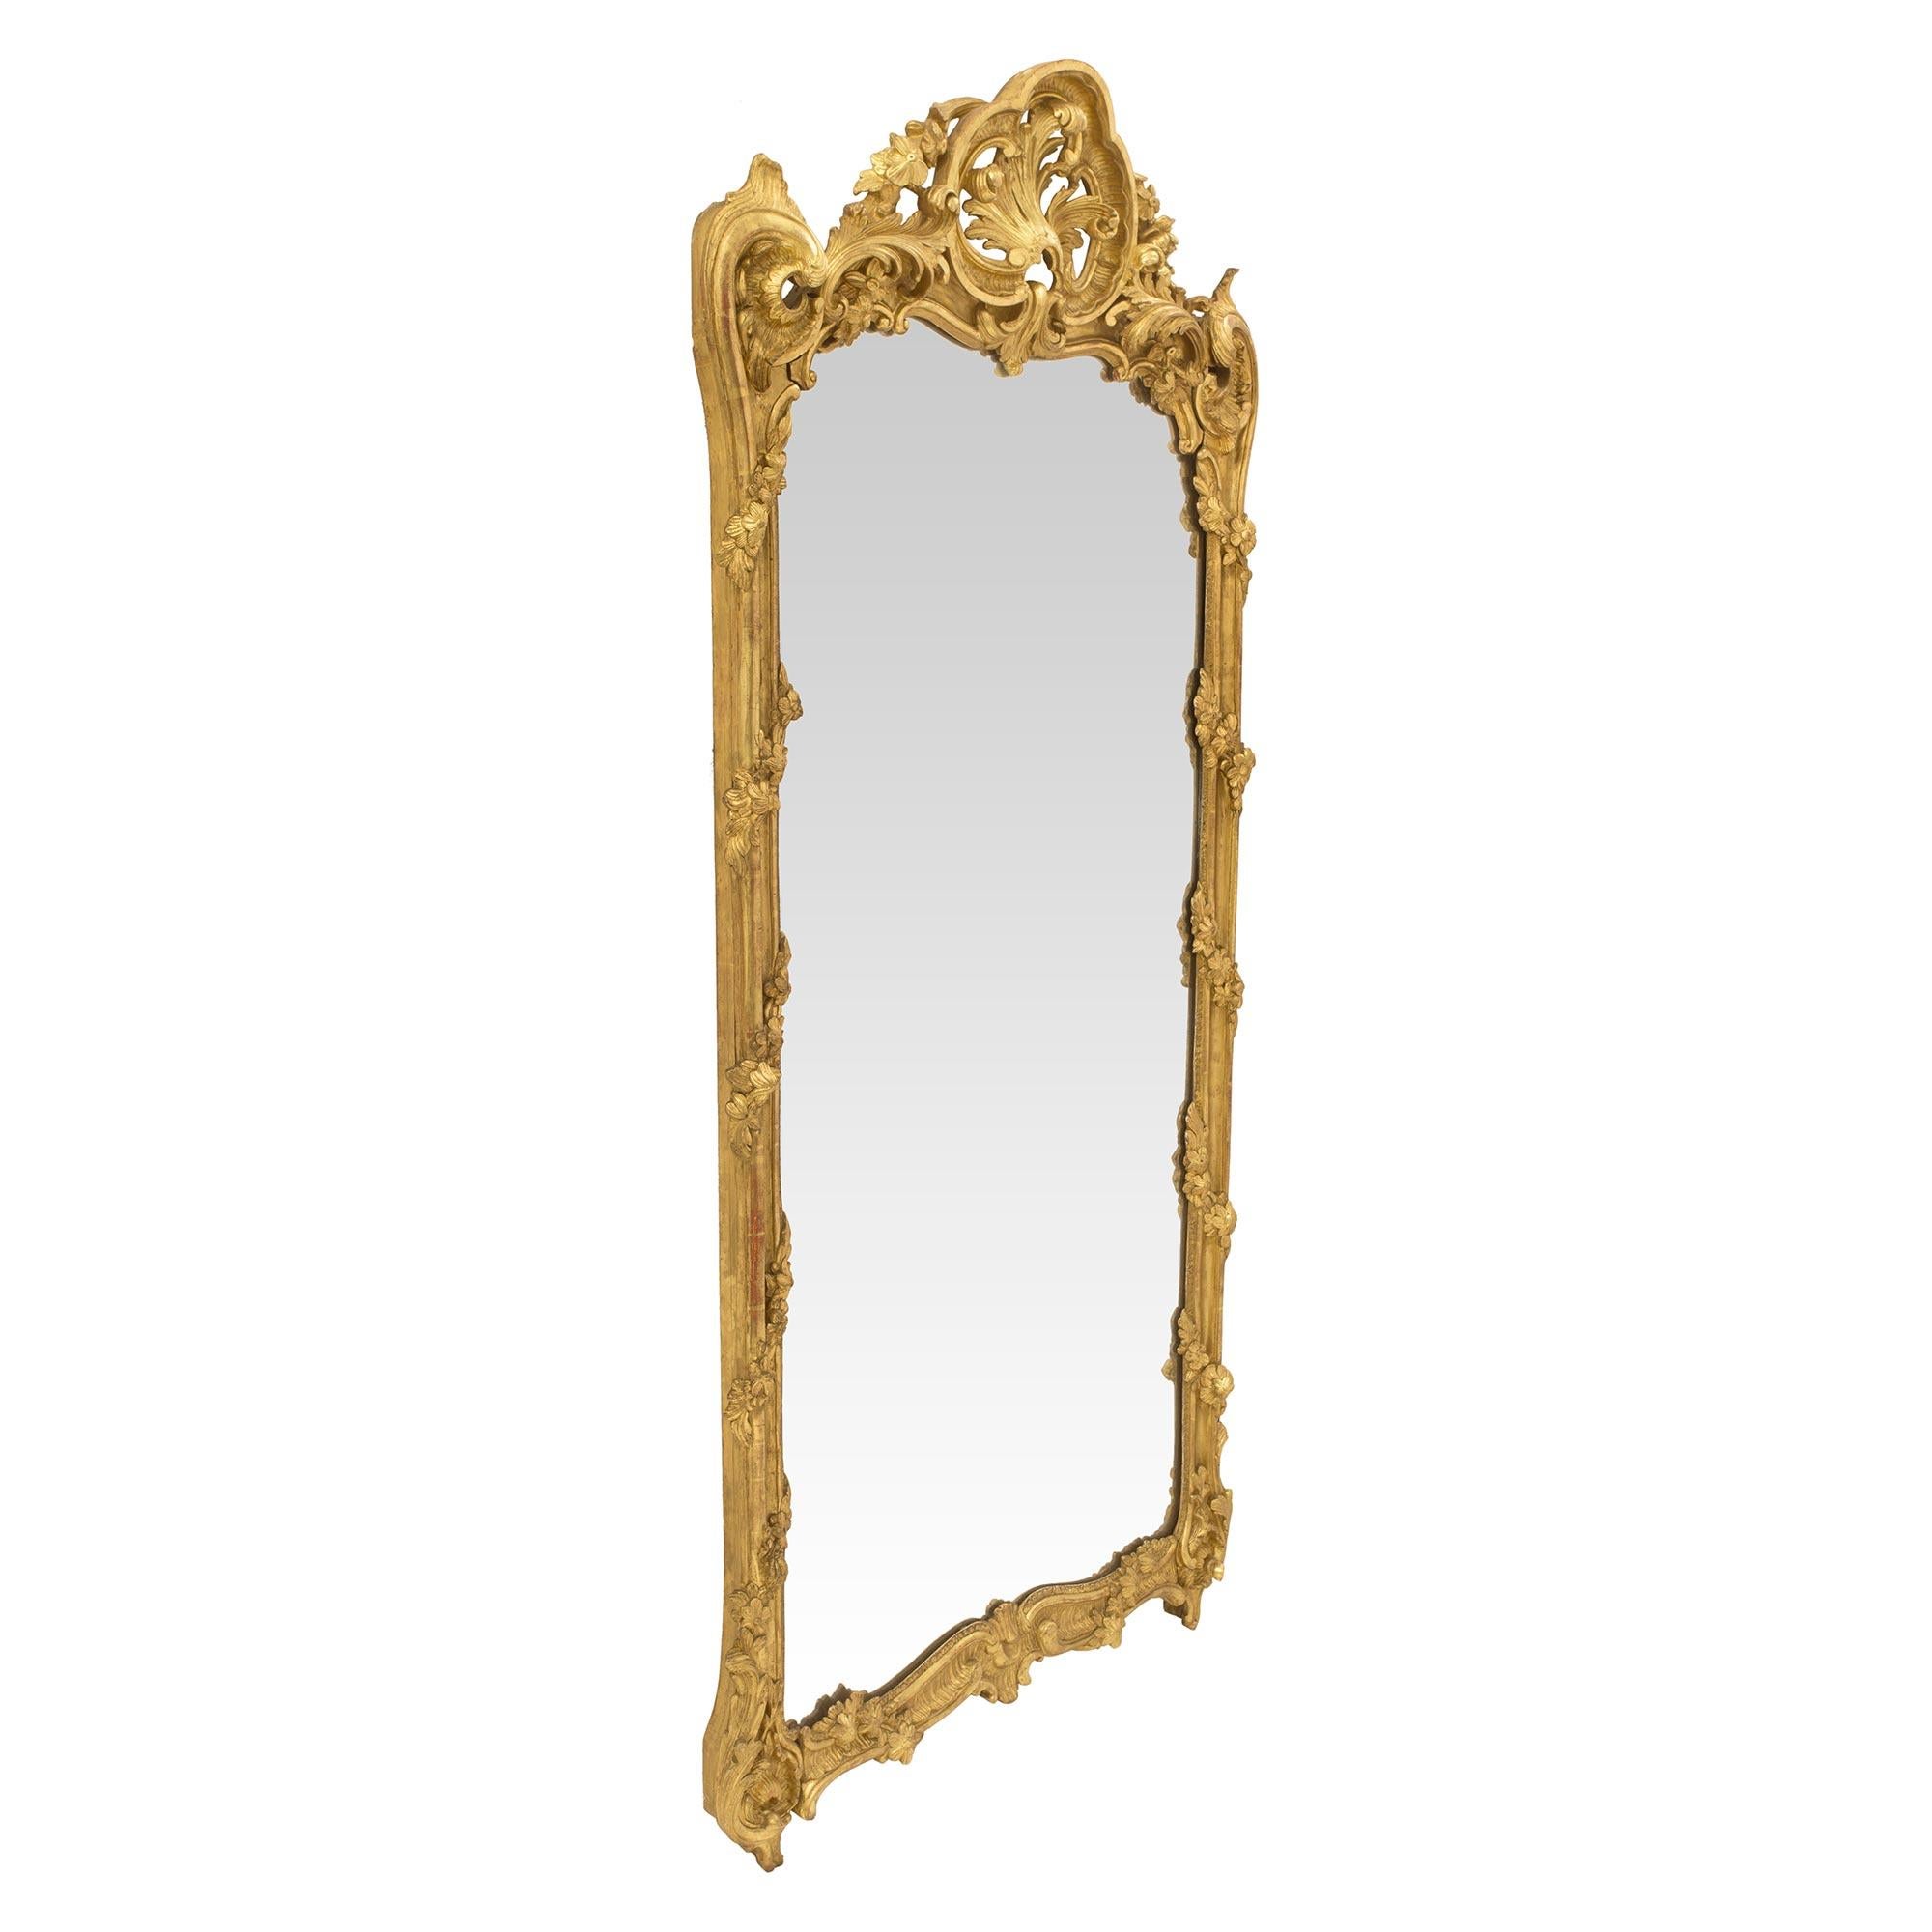 Un étonnant et grand miroir en bois doré de la période Régence du 18ème siècle. La plaque de miroir d'origine est encadrée d'une belle et très décorative bordure mouchetée avec de charmantes guirlandes florales enroulées finement sculptées. La base